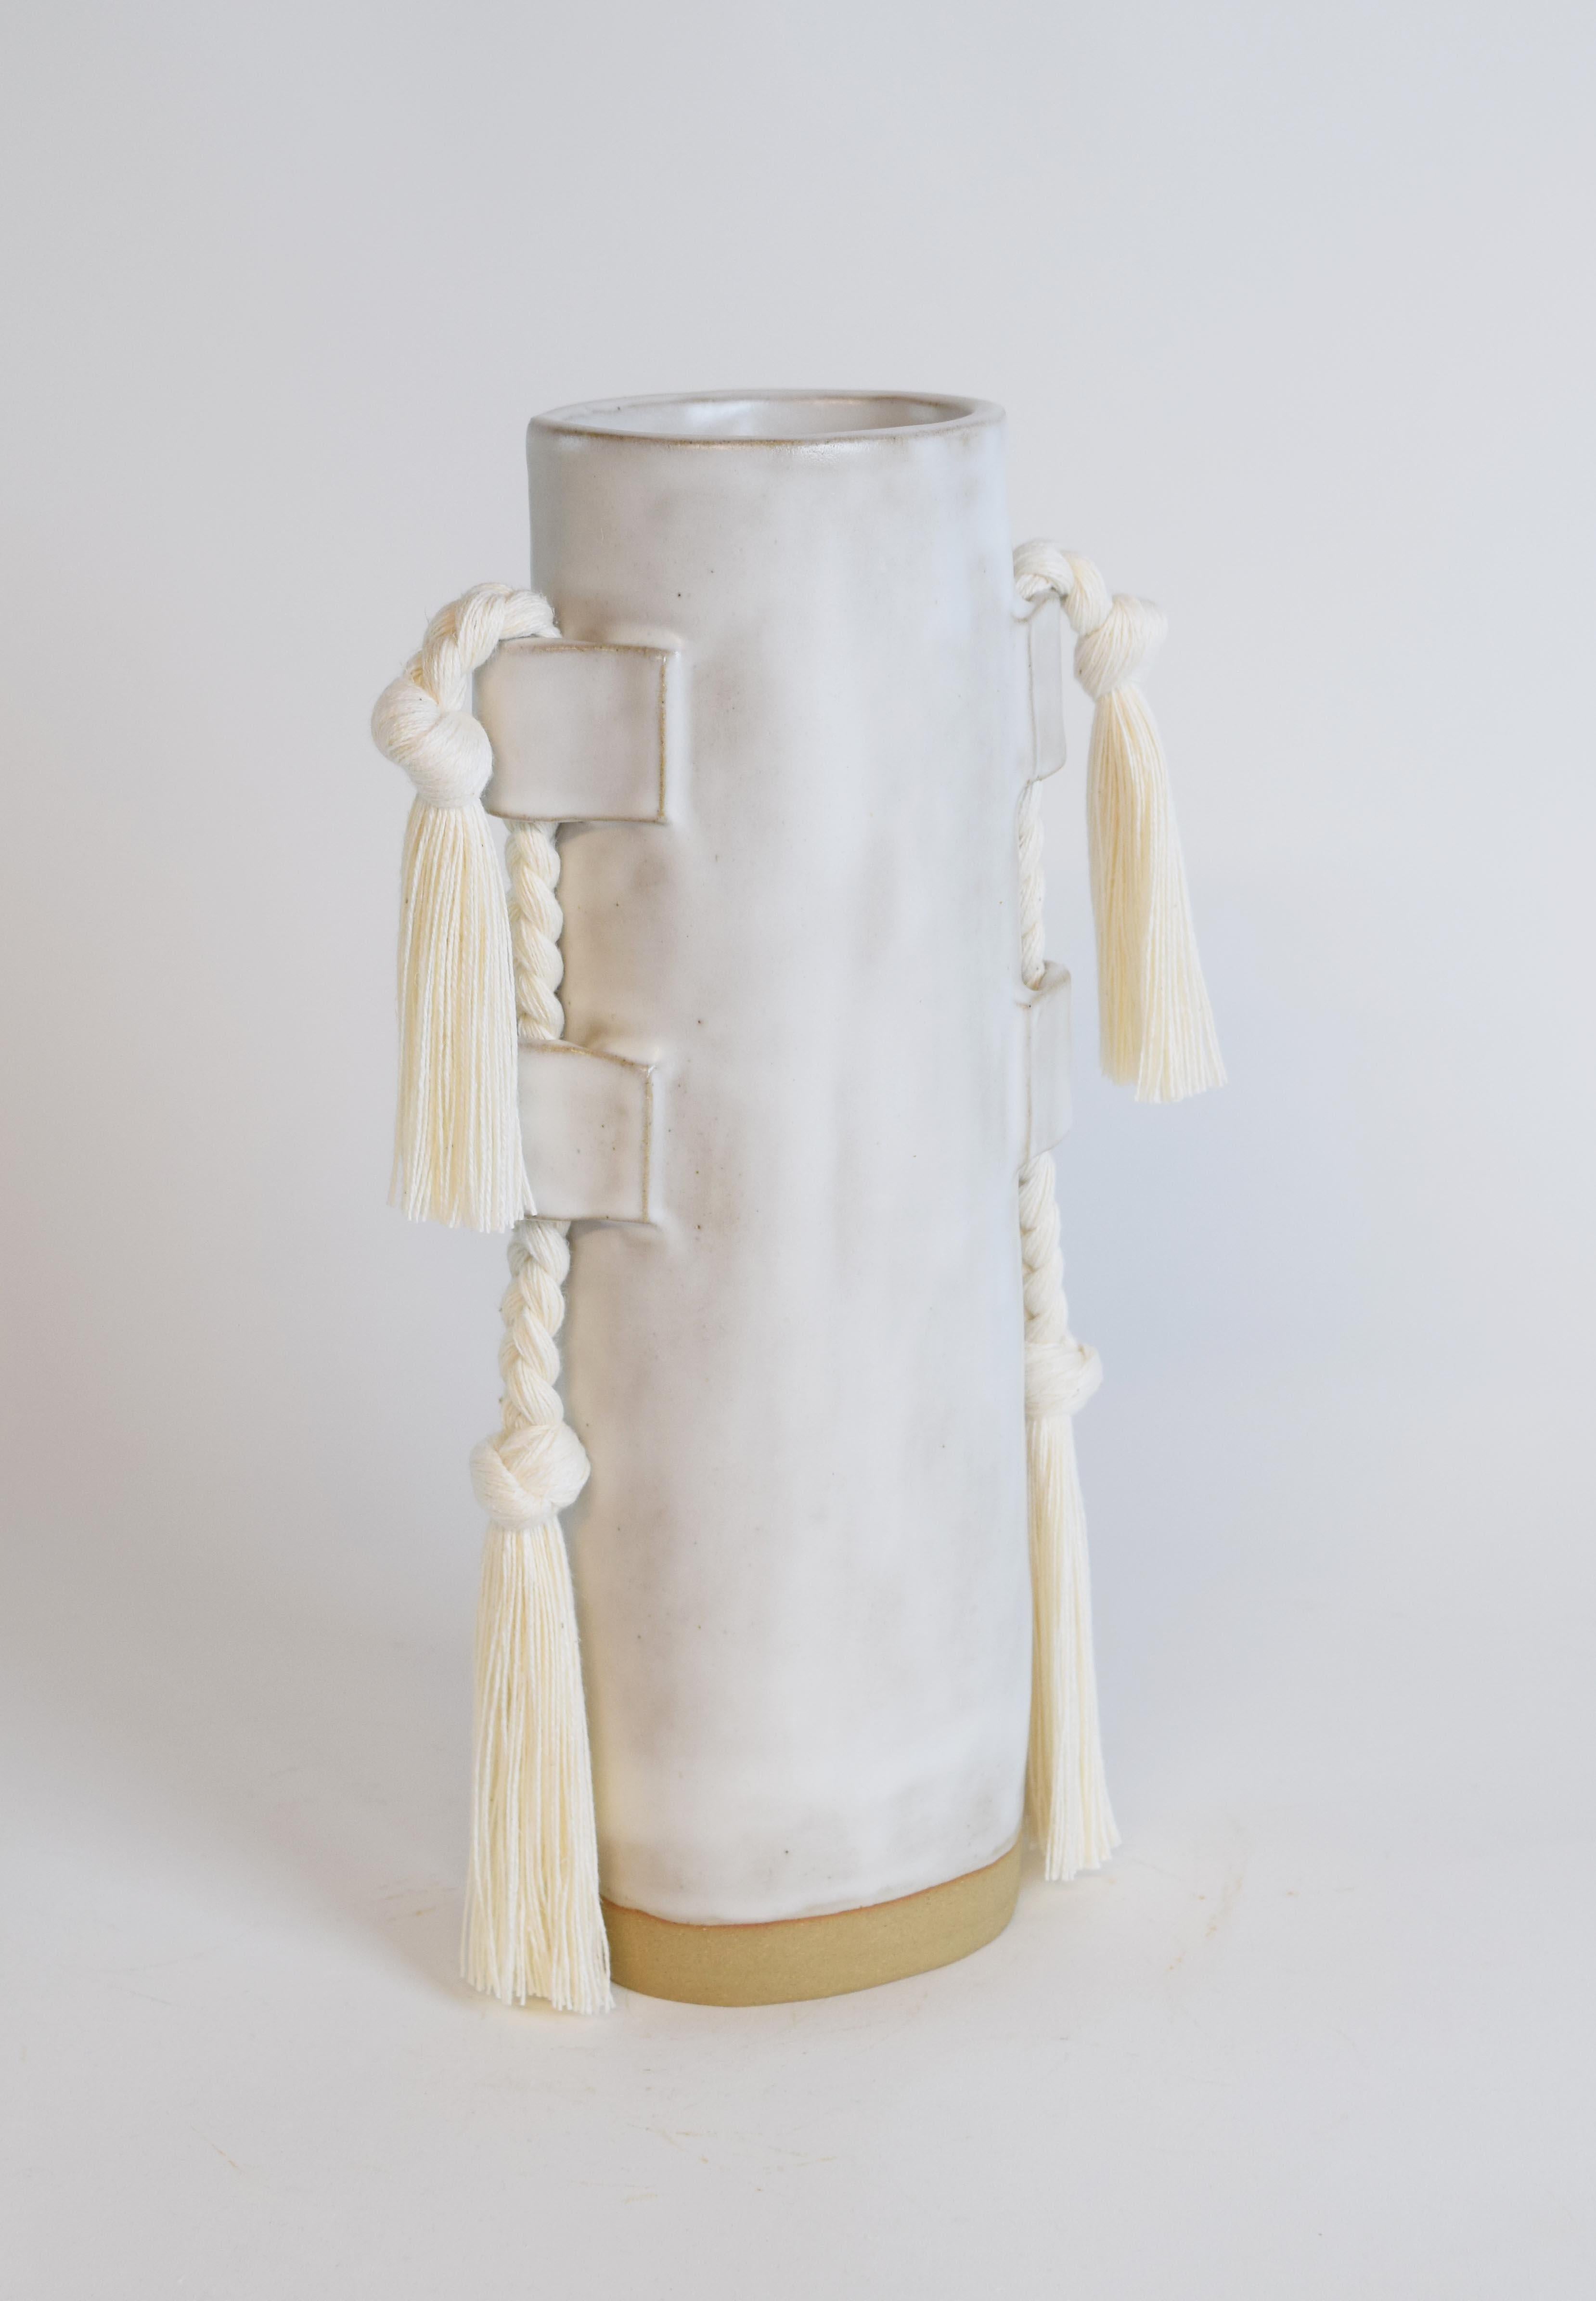 Vase #504 par Karen Gayle Tinney

Très apprécié depuis son lancement en 2018, ce vase polyvalent sert à la fois d'objet sculptural et de récipient pour les fleurs.

Grès formé à la main avec des détails tressés en coton blanc satiné. L'intérieur est